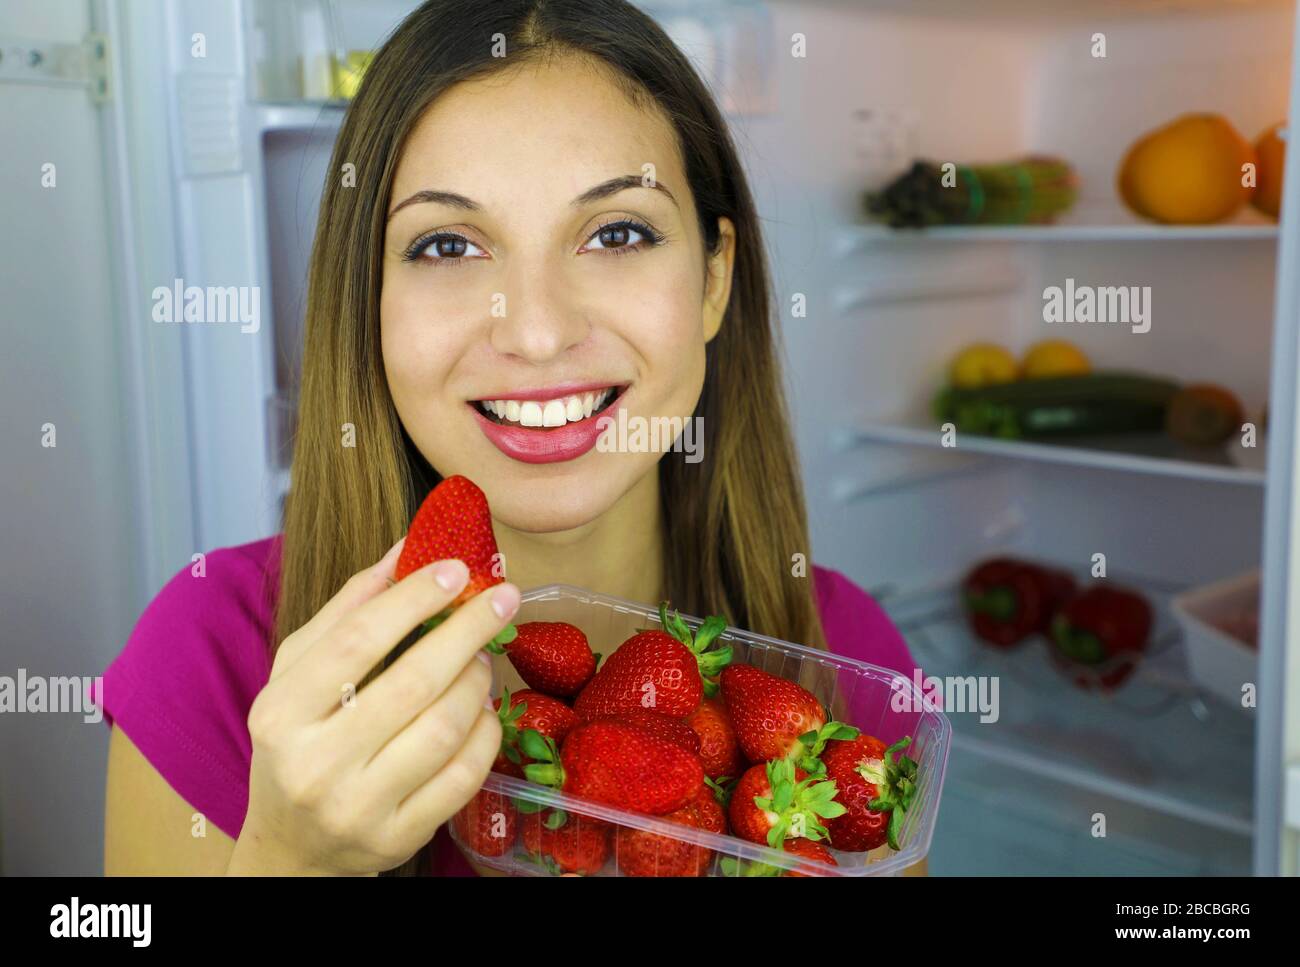 Nahaufnahme des hübschen lächelnden Mädchens in der Nähe des Kühlschranks, der Erdbeeren in den Händen hält, blickt auf die Kamera. Gesundes Lebensmittelkonzept. Frisches Obst und Gemüse Stockfoto